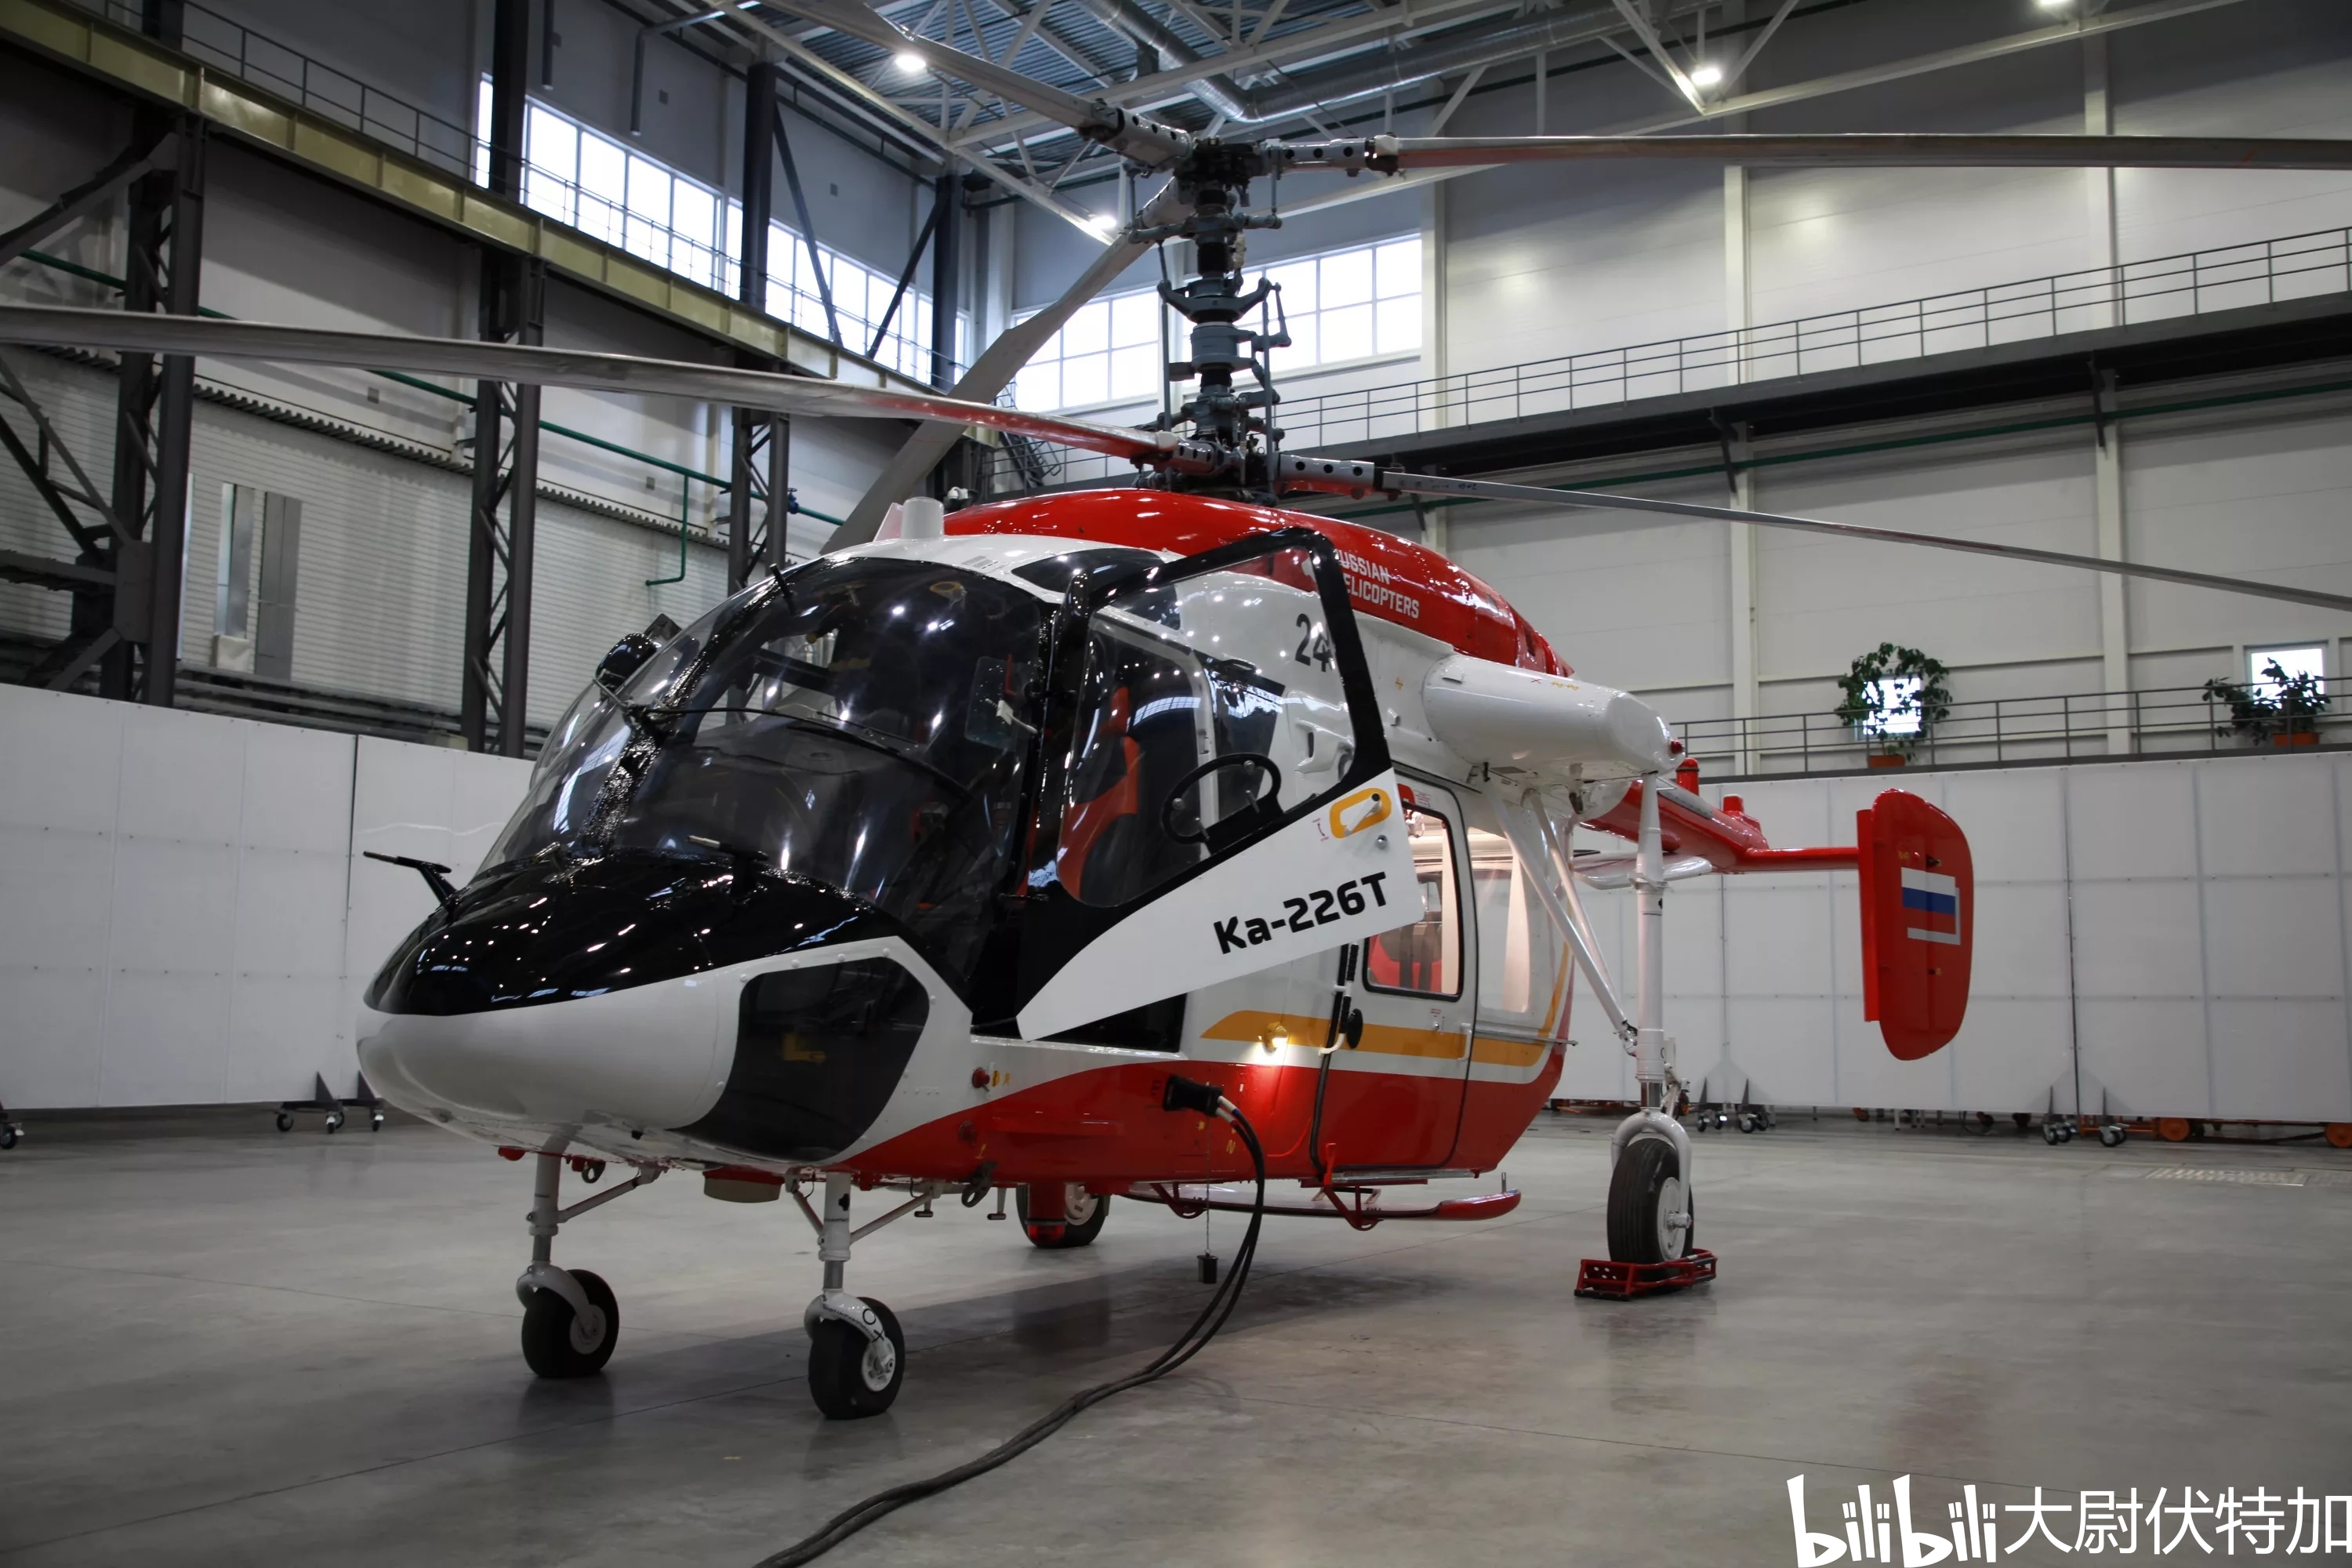 乌兰乌德航空工厂为印度制造两架卡226t直升机样机